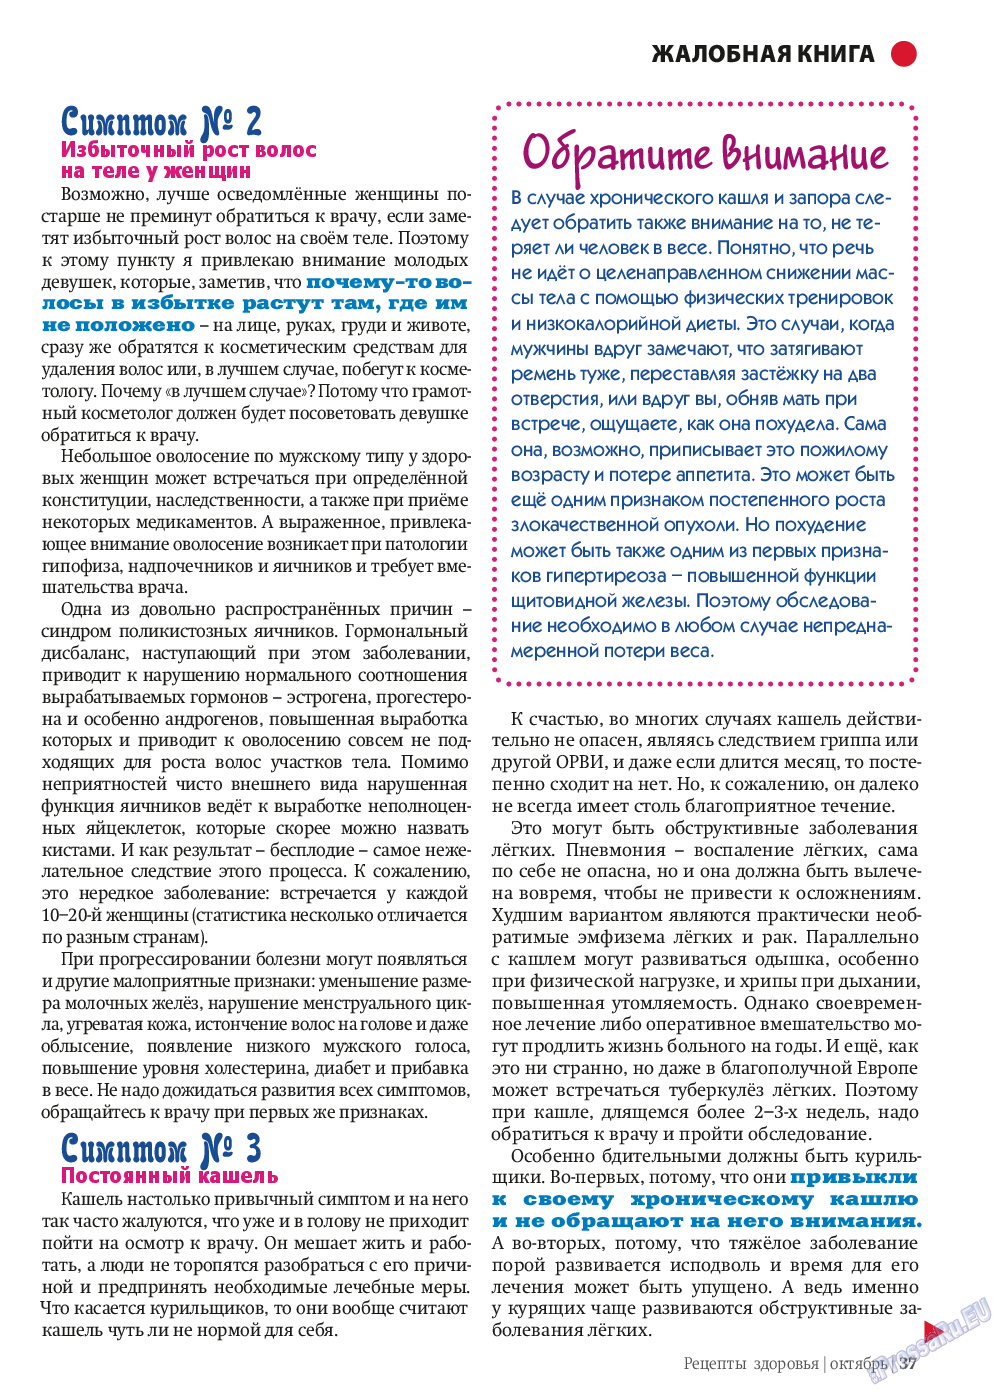 Рецепты здоровья, журнал. 2013 №10 стр.37